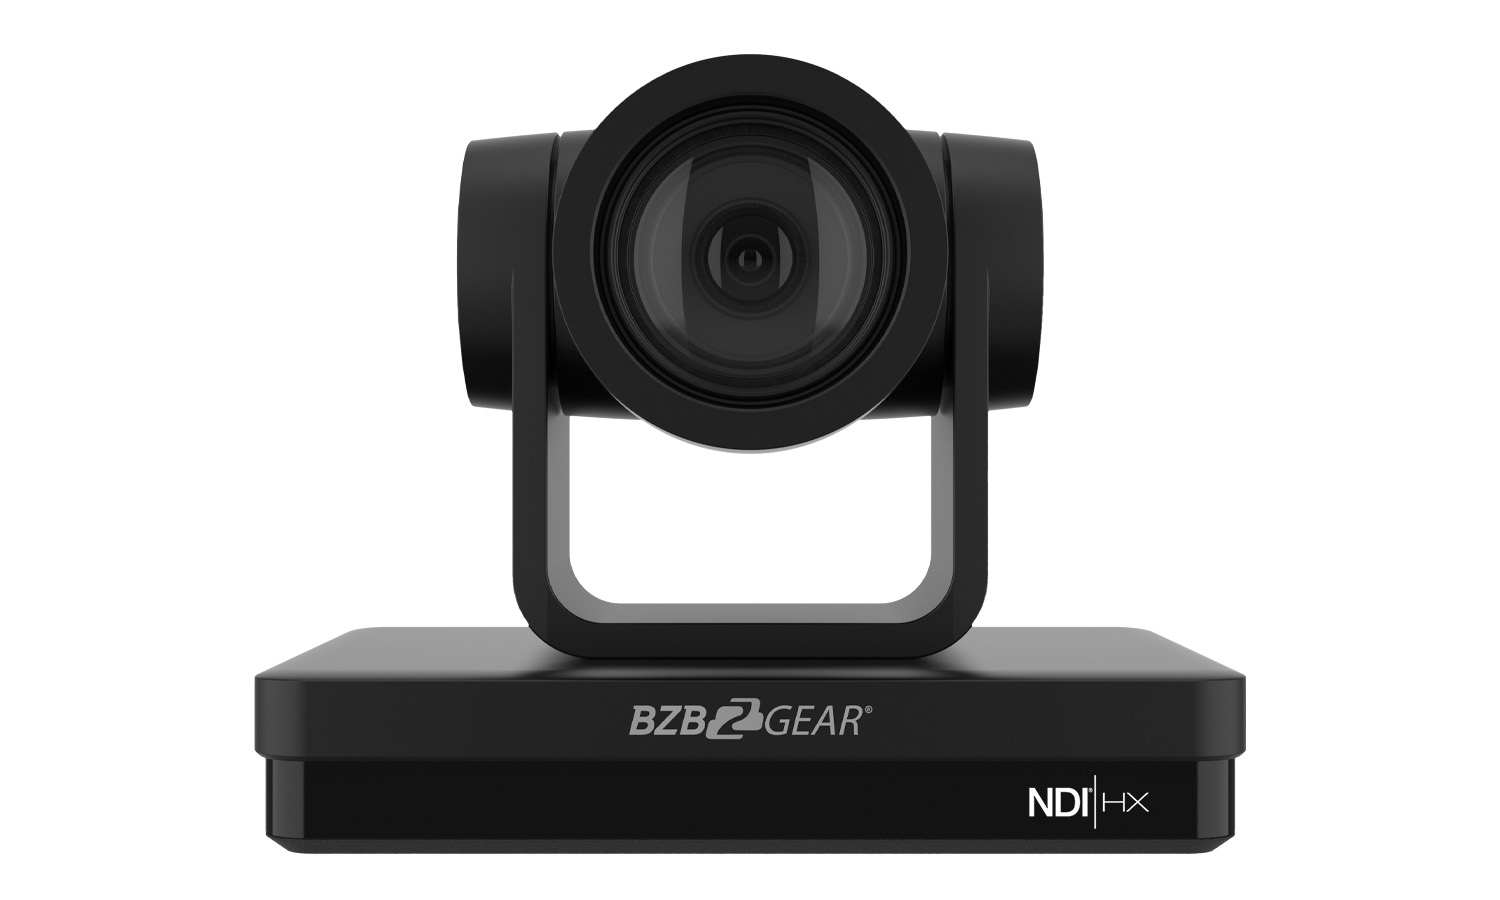 BG-UPTZ-ND12X-B Universal 1080P FHD PTZ 12X NDI/HDMI/SDI/USB 3.0 RS232/485 Live Streaming Camera (Black) by BZBGEAR